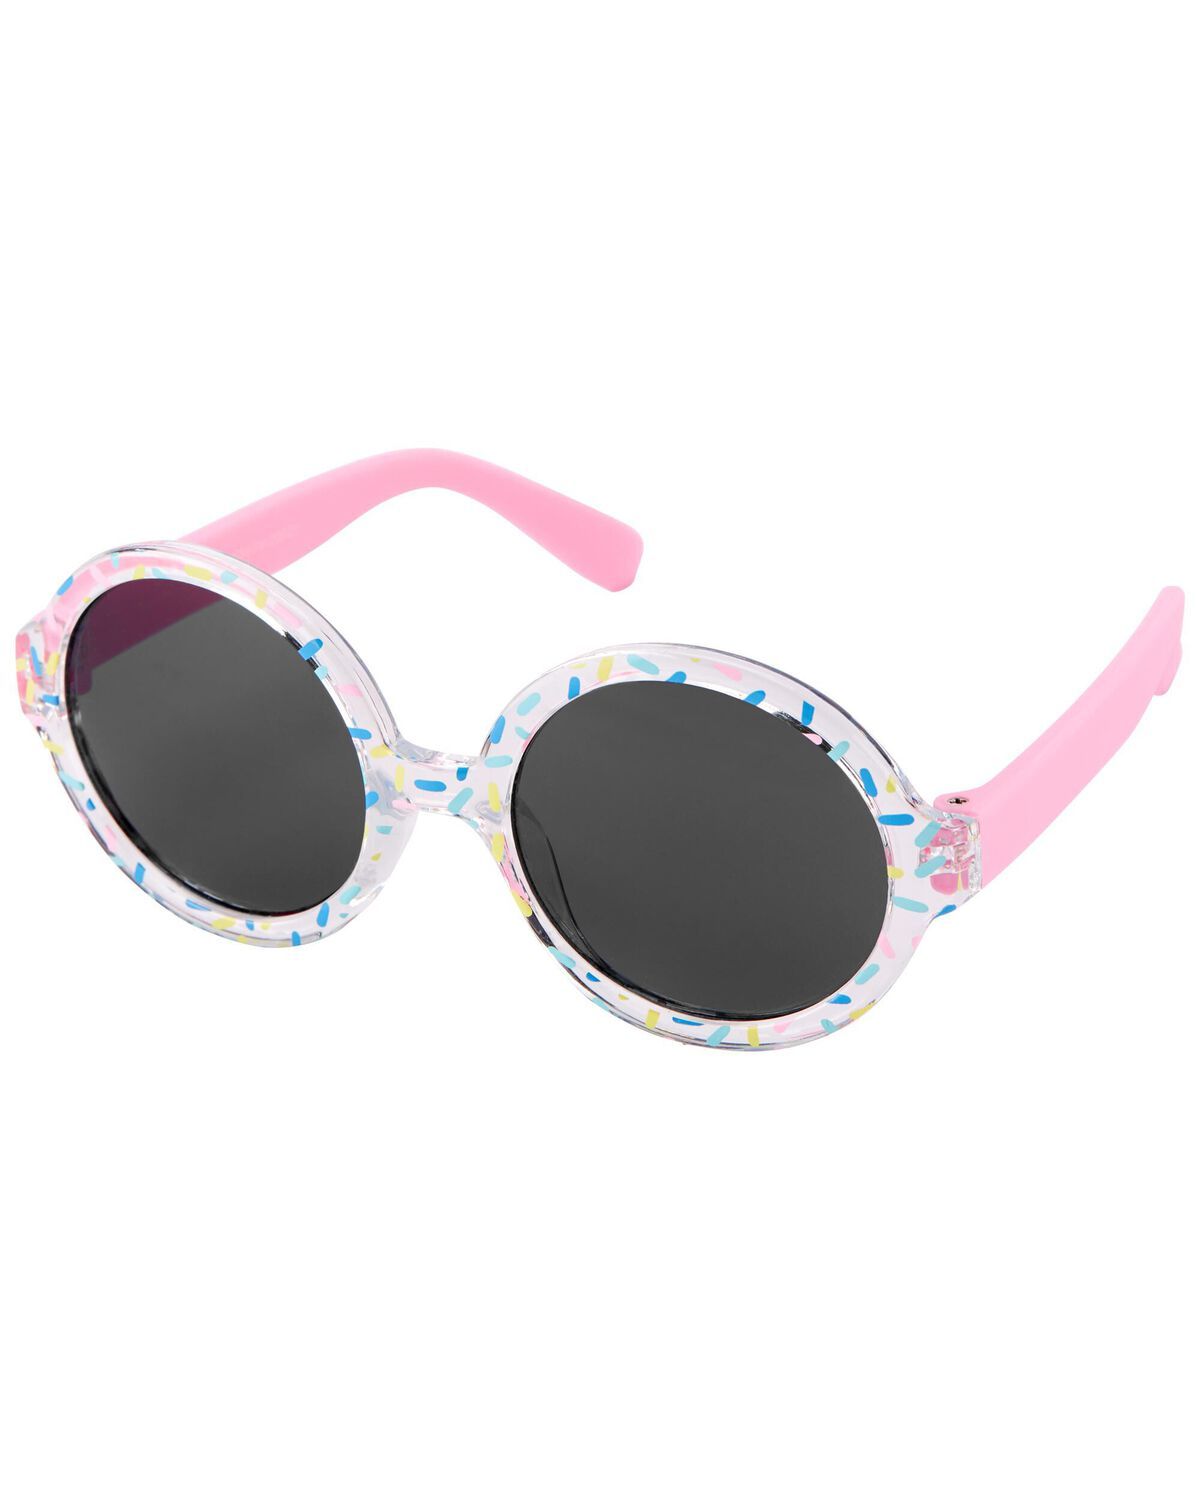 Pink Round Sunglasses | carters.com | Carter's